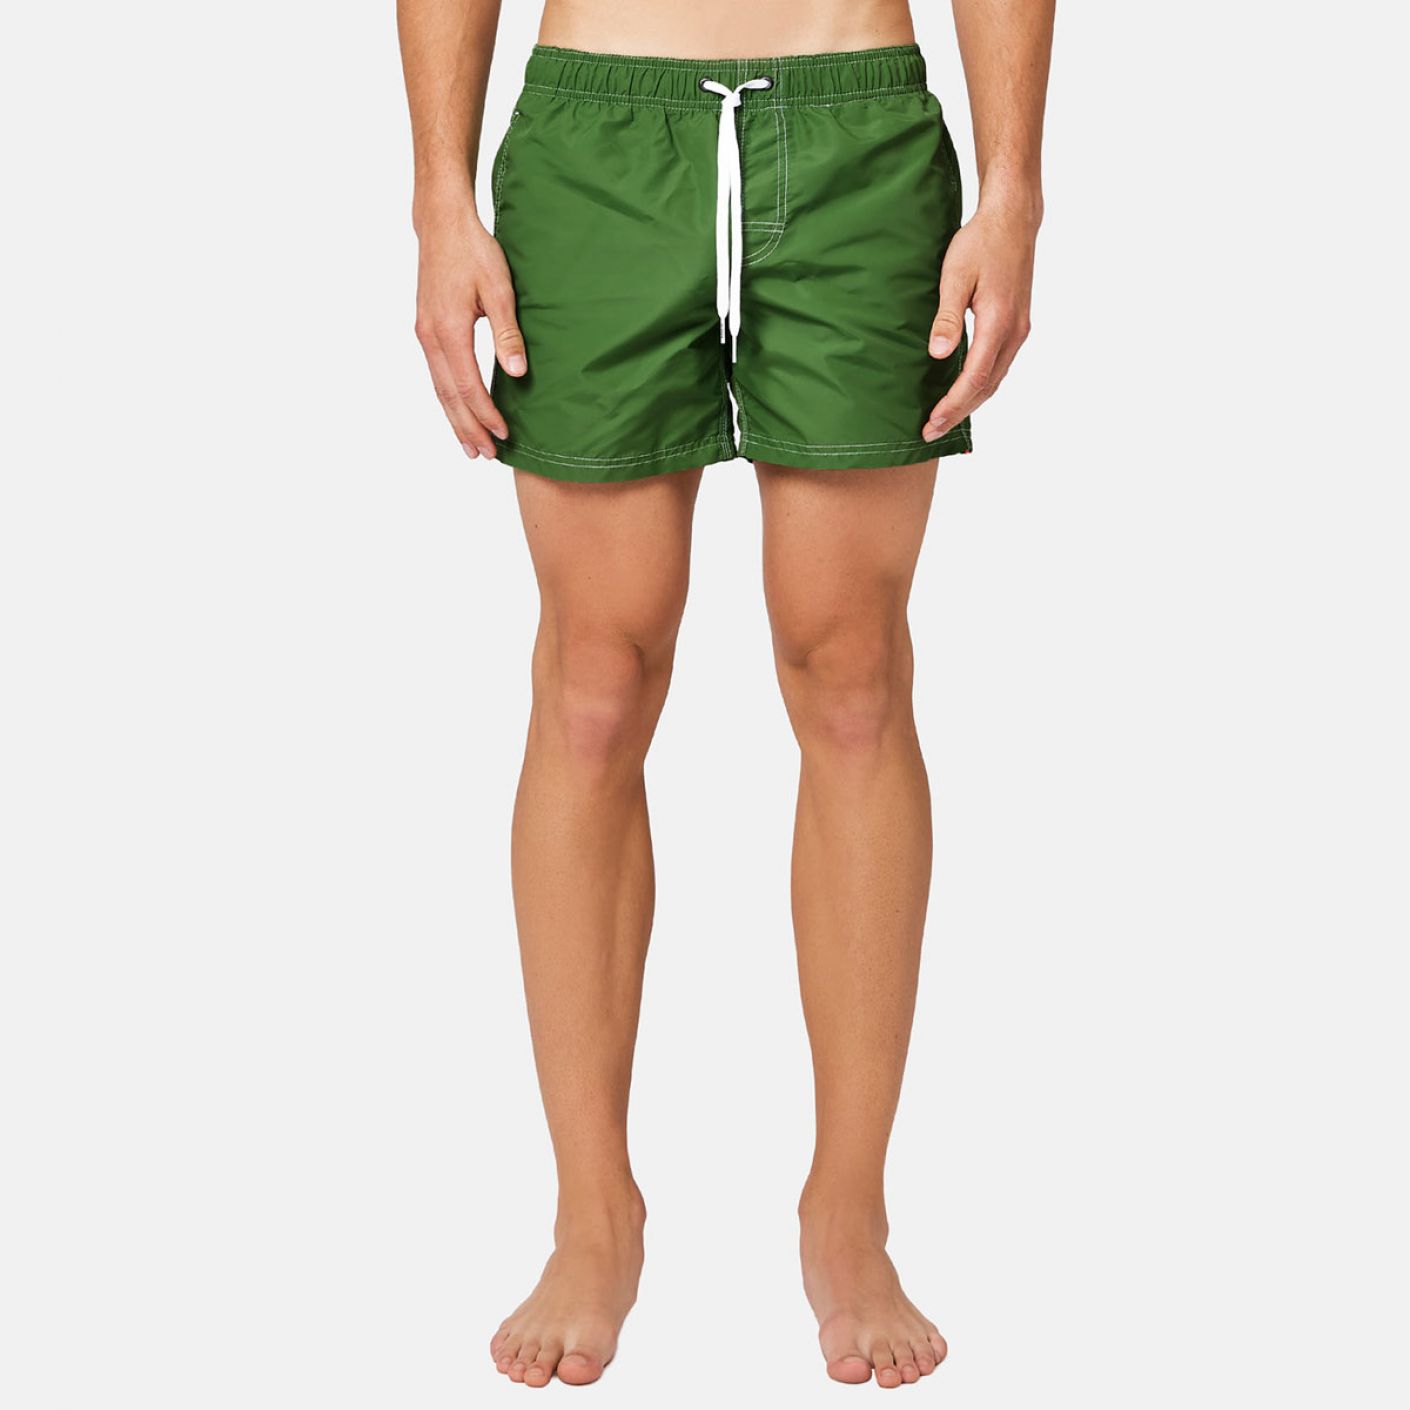 Sundek Short Green Swimsuit